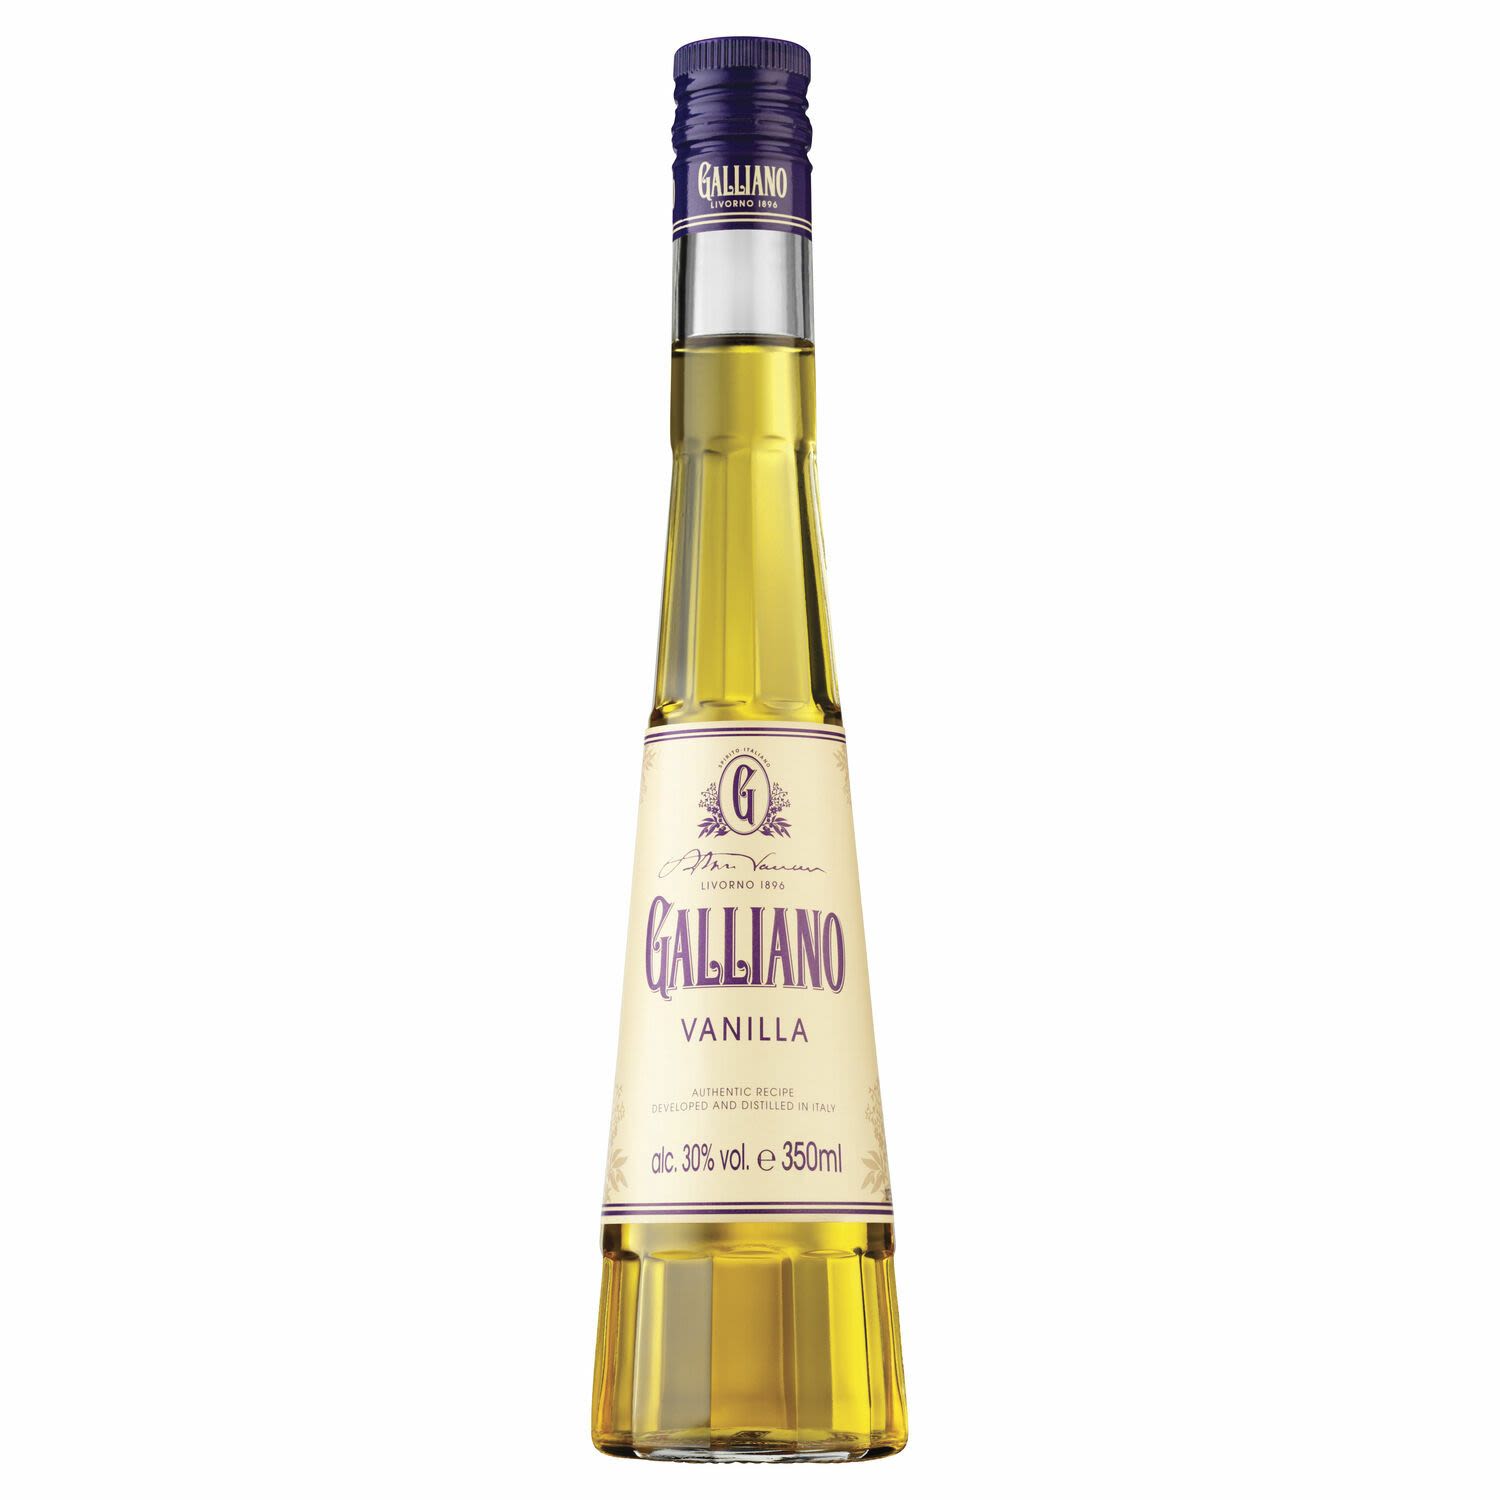 Galliano Vanilla Liquore 350mL Bottle